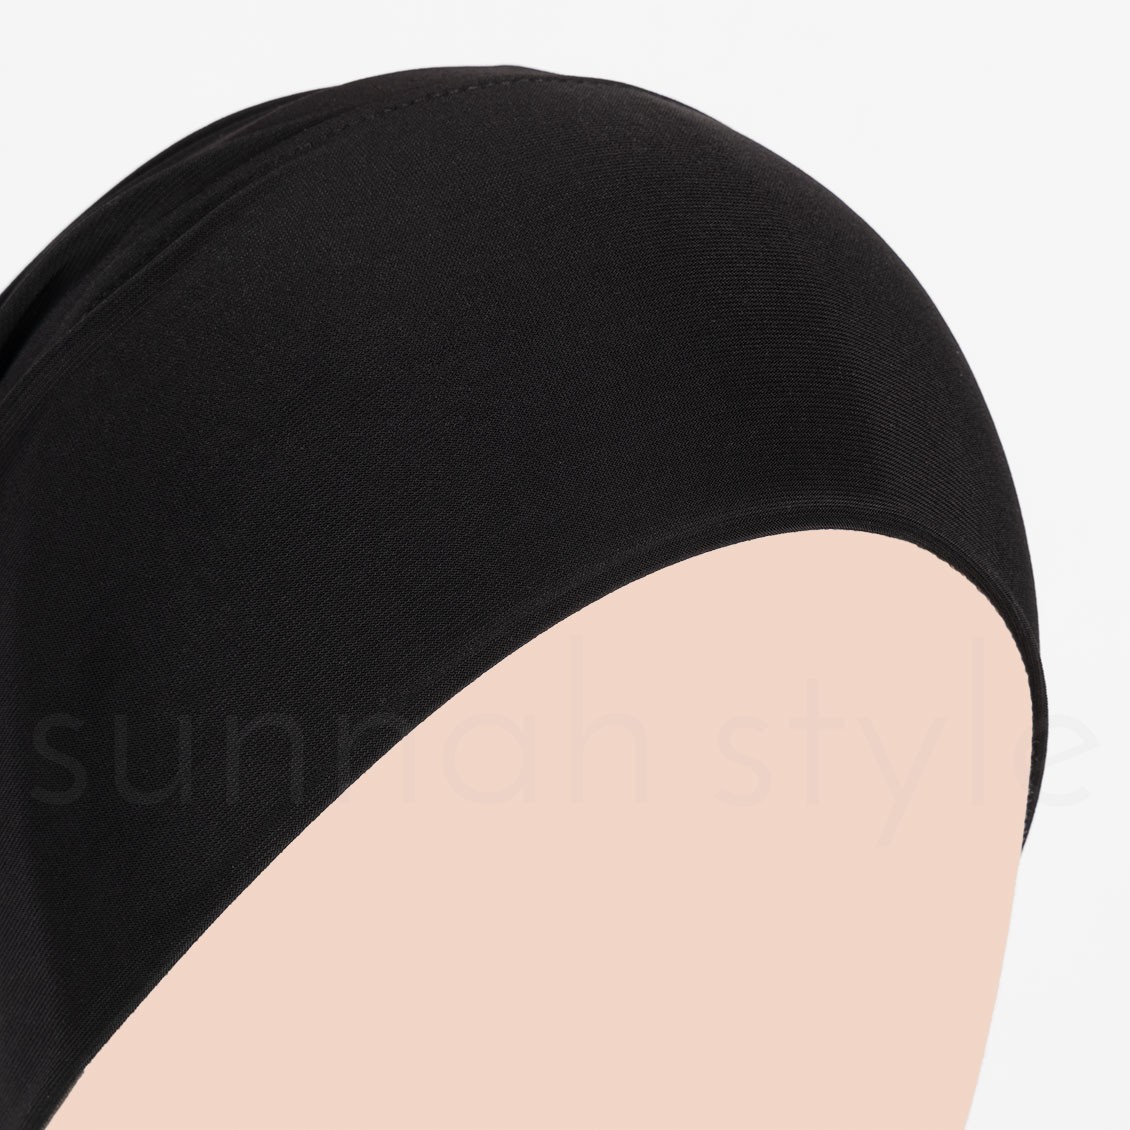 Sunnah Style Tube Underscarf Black